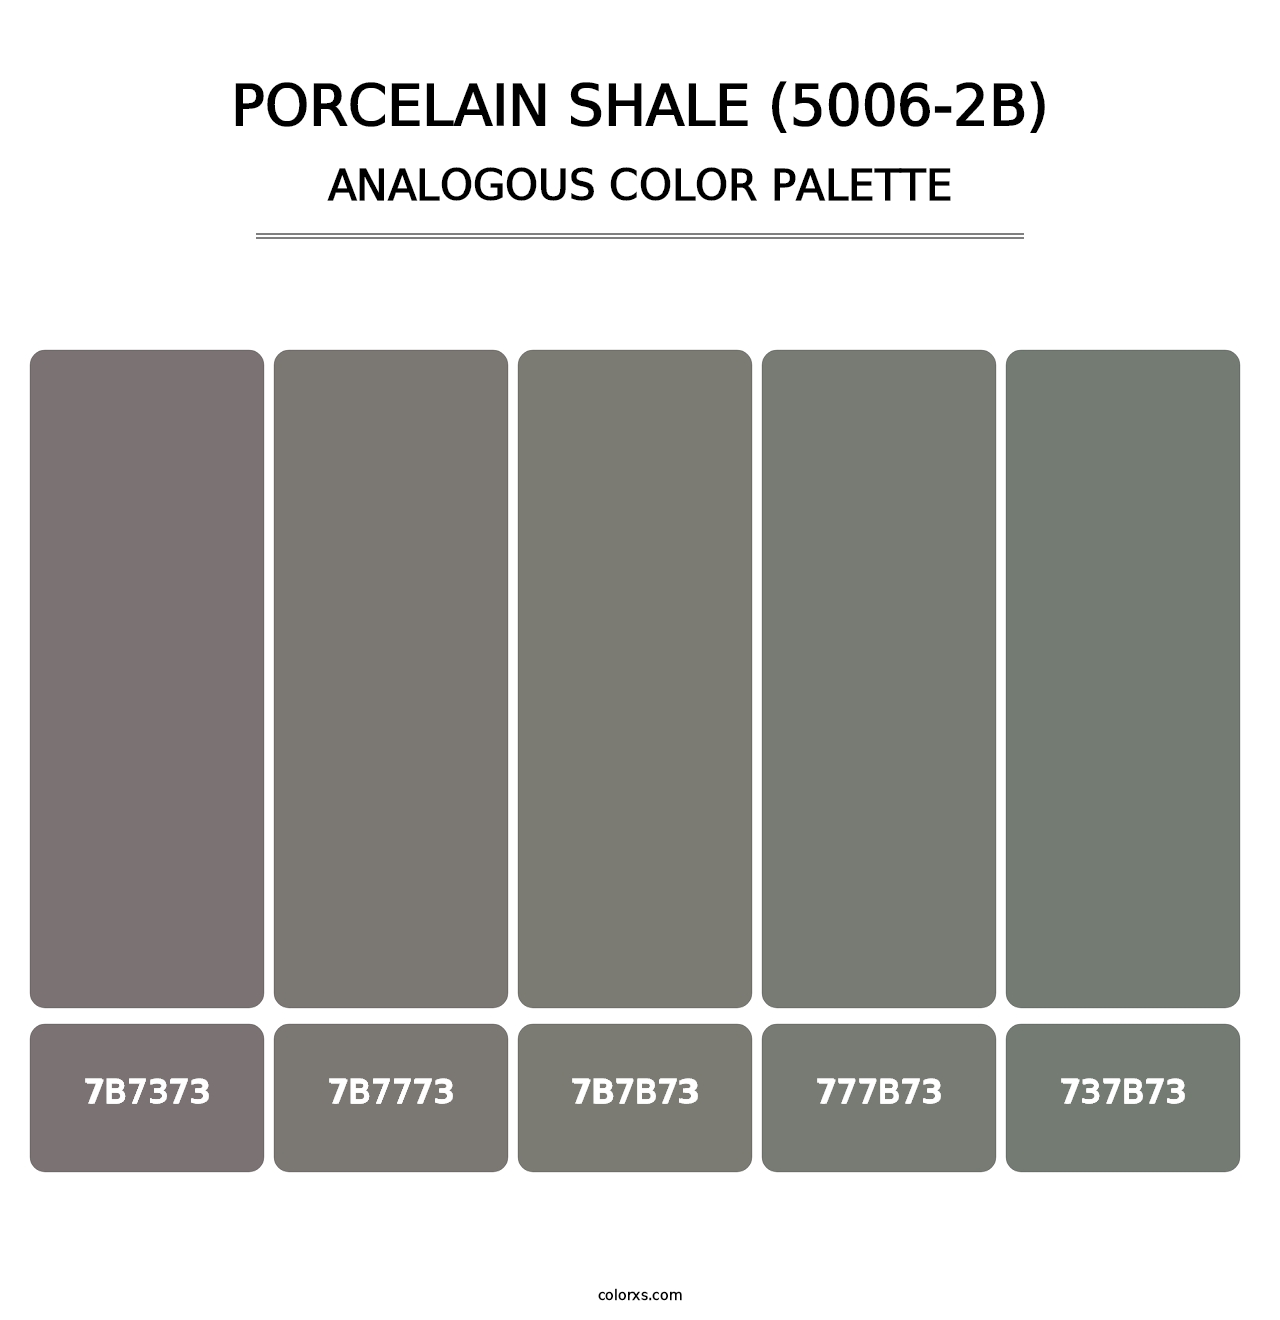 Porcelain Shale (5006-2B) - Analogous Color Palette